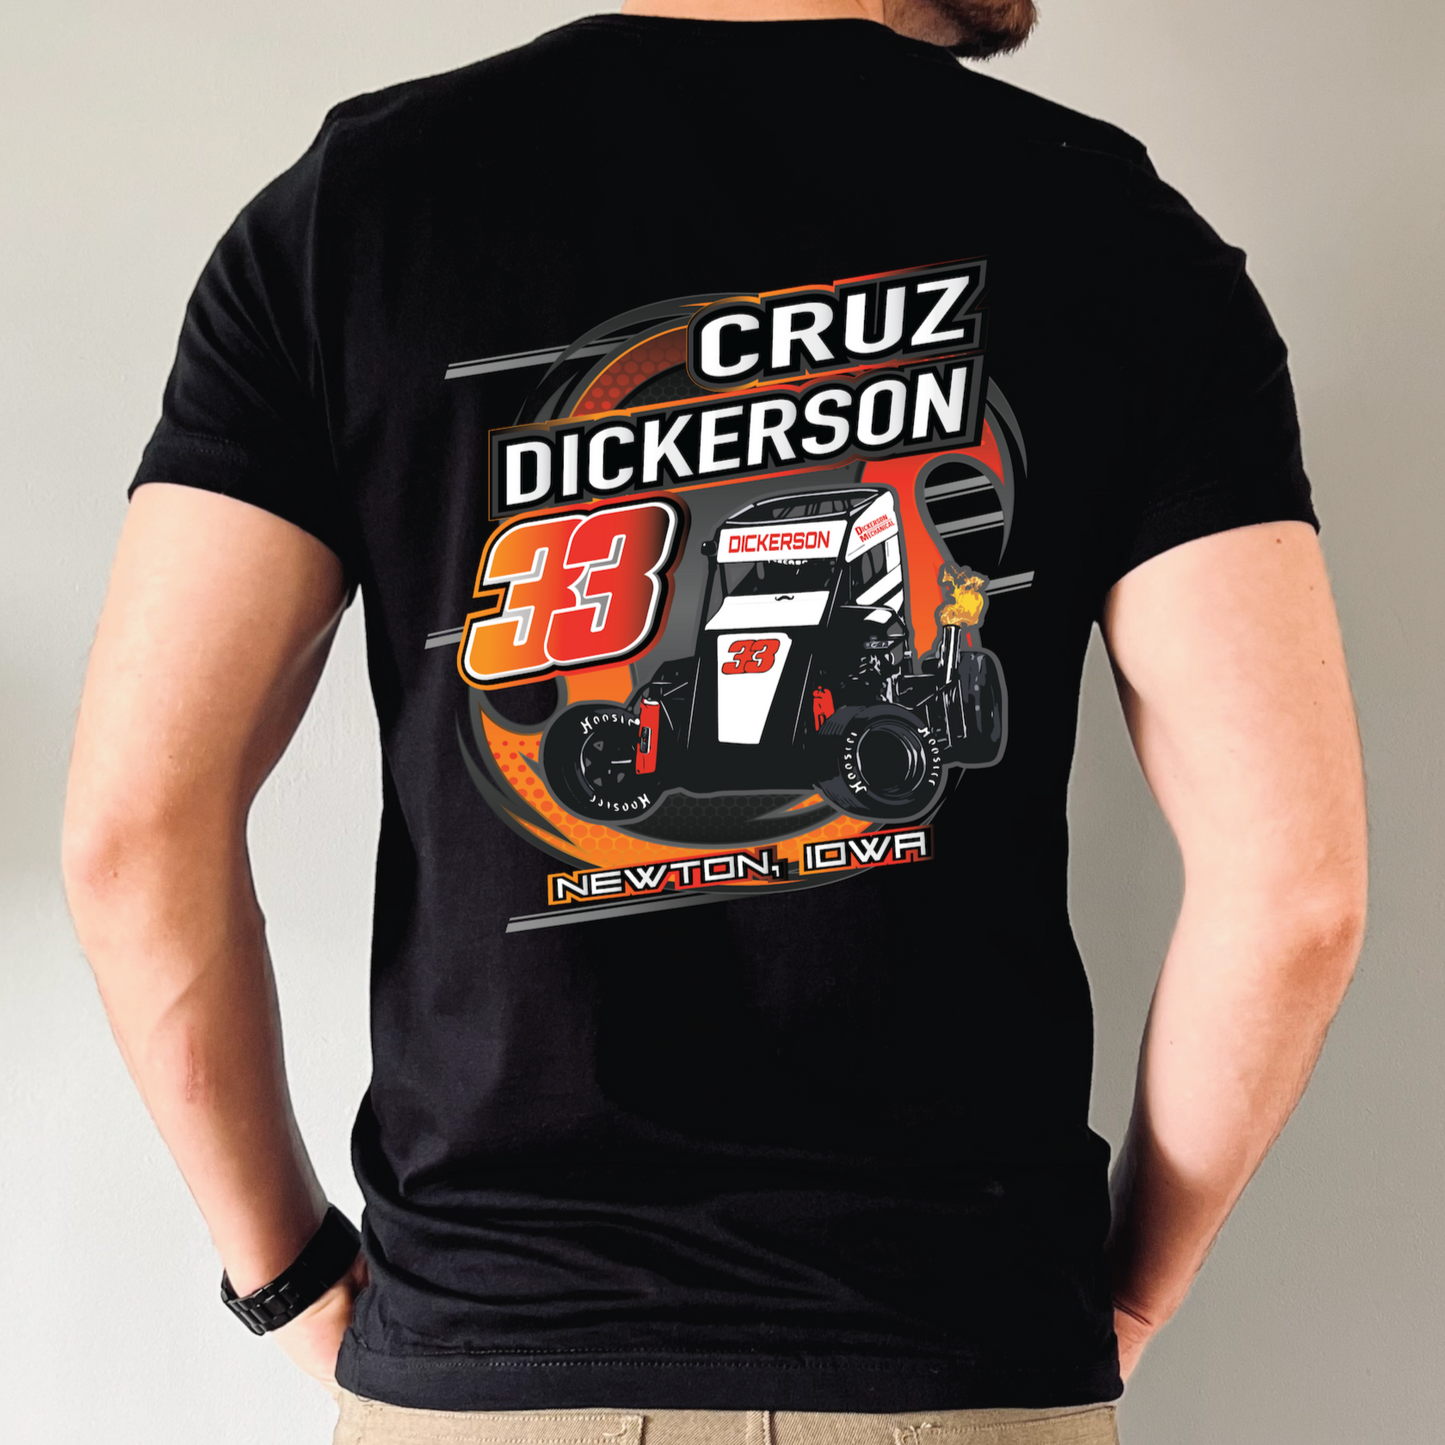 Cruz Dickerson Racing